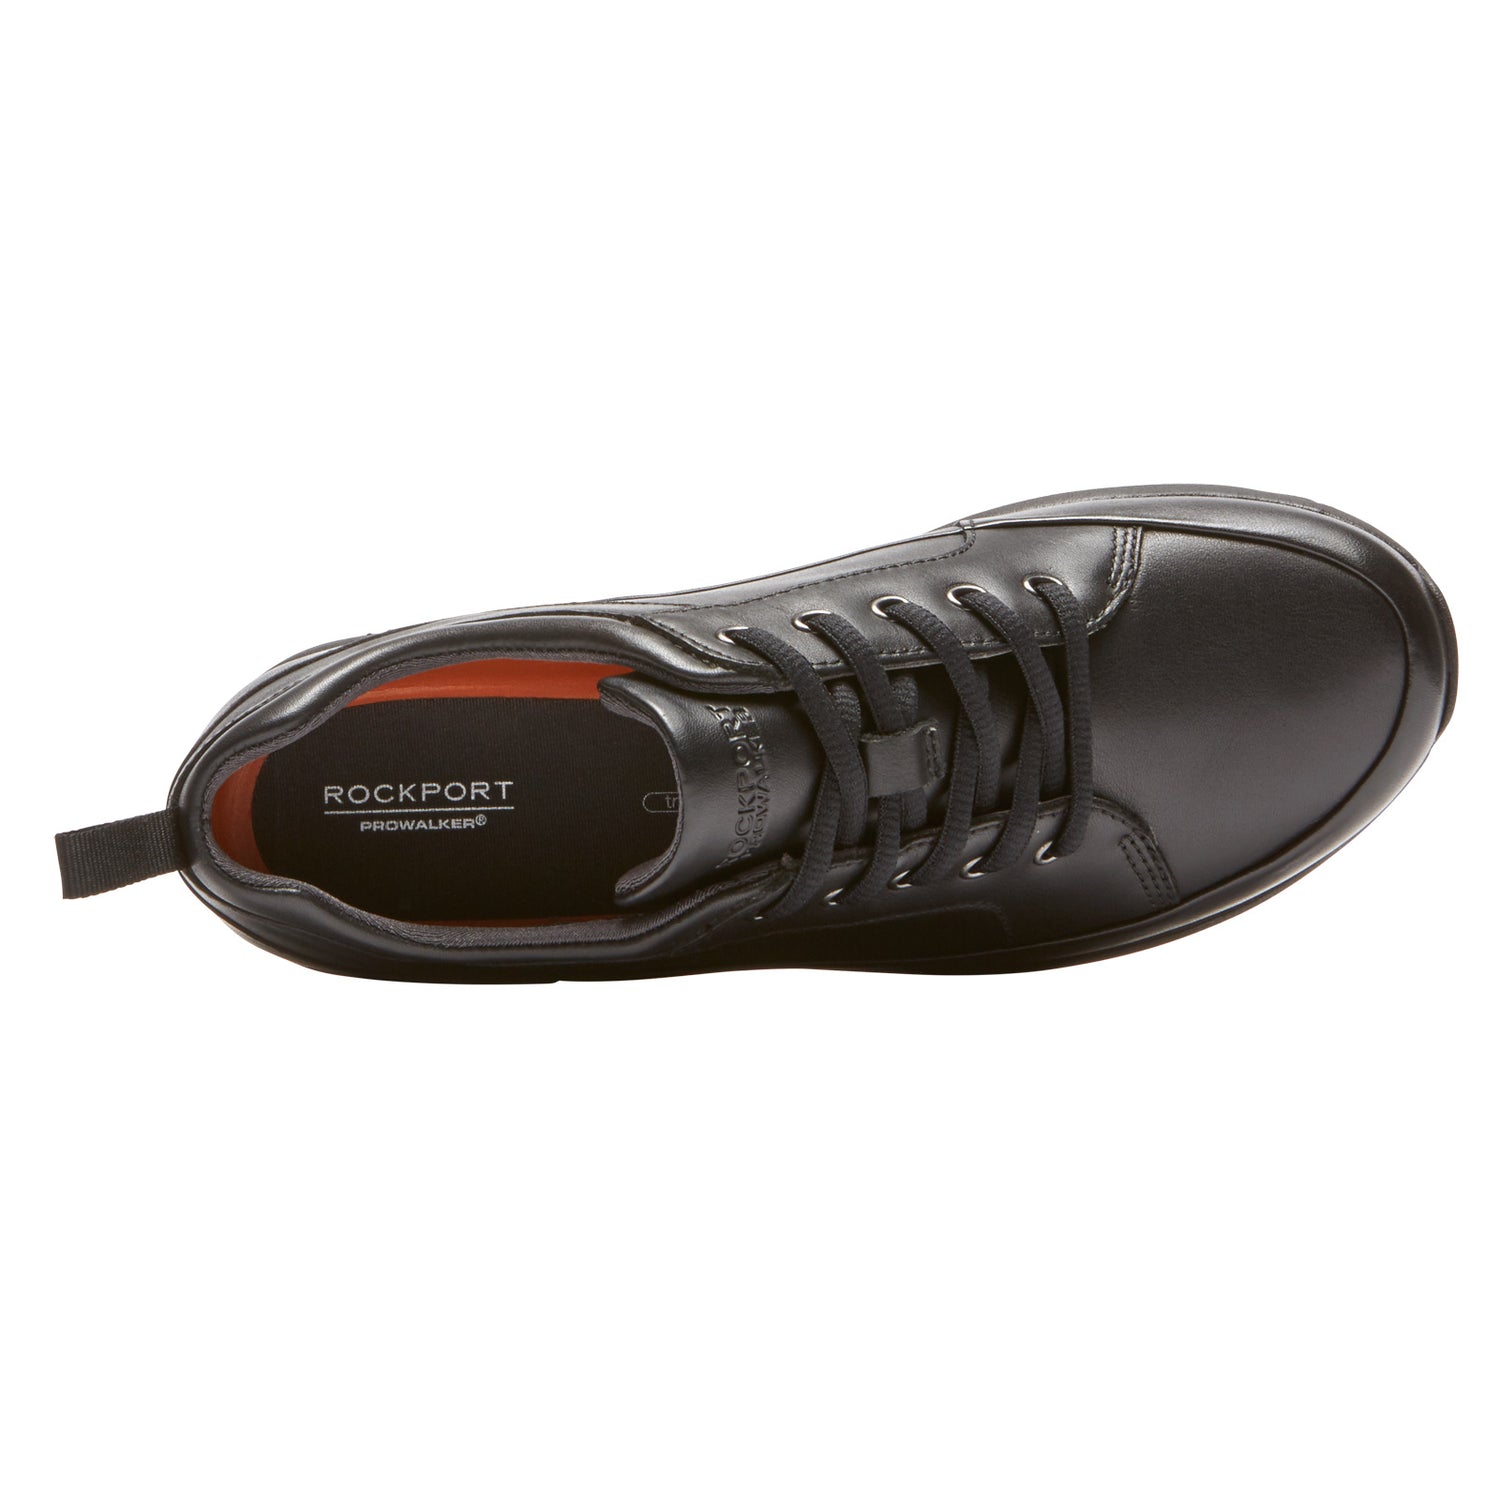 Peltz Shoes  Women's Rockport Prowalker Waterproof Walking Shoe BLACK CG8777